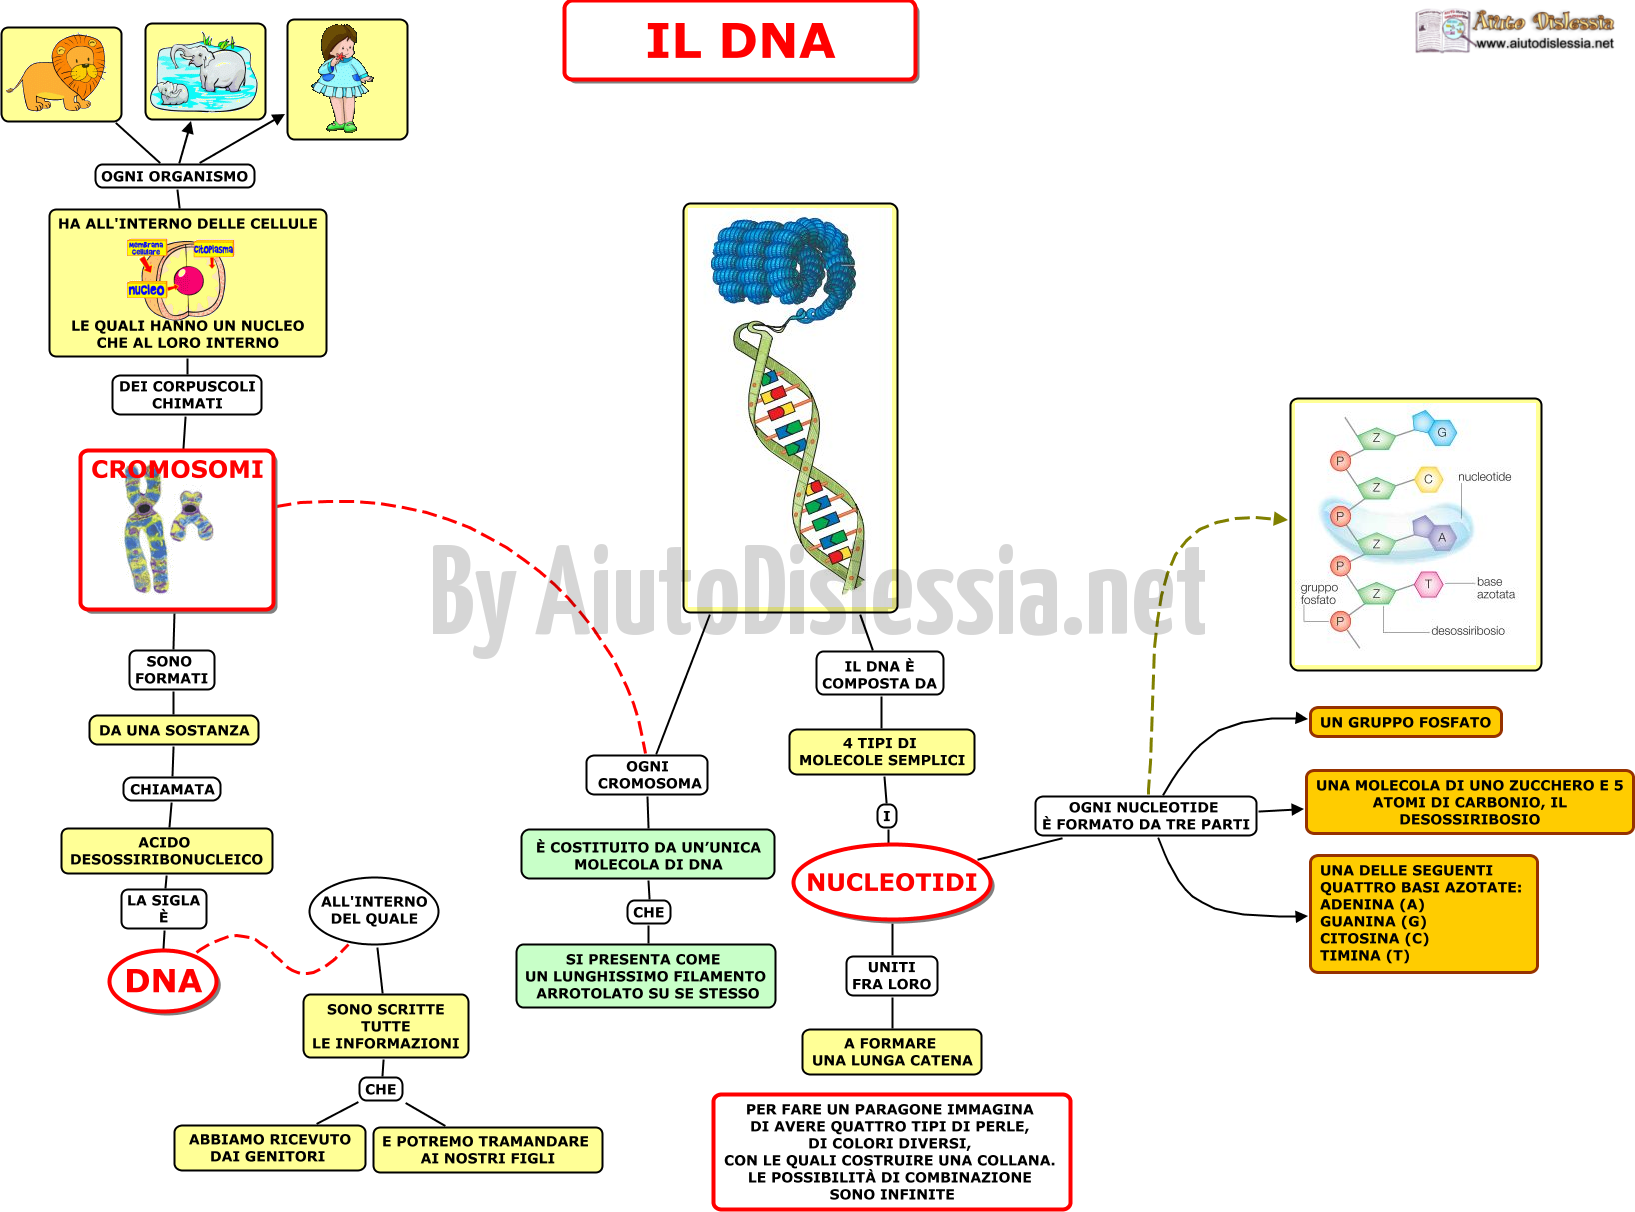 01. il DNA